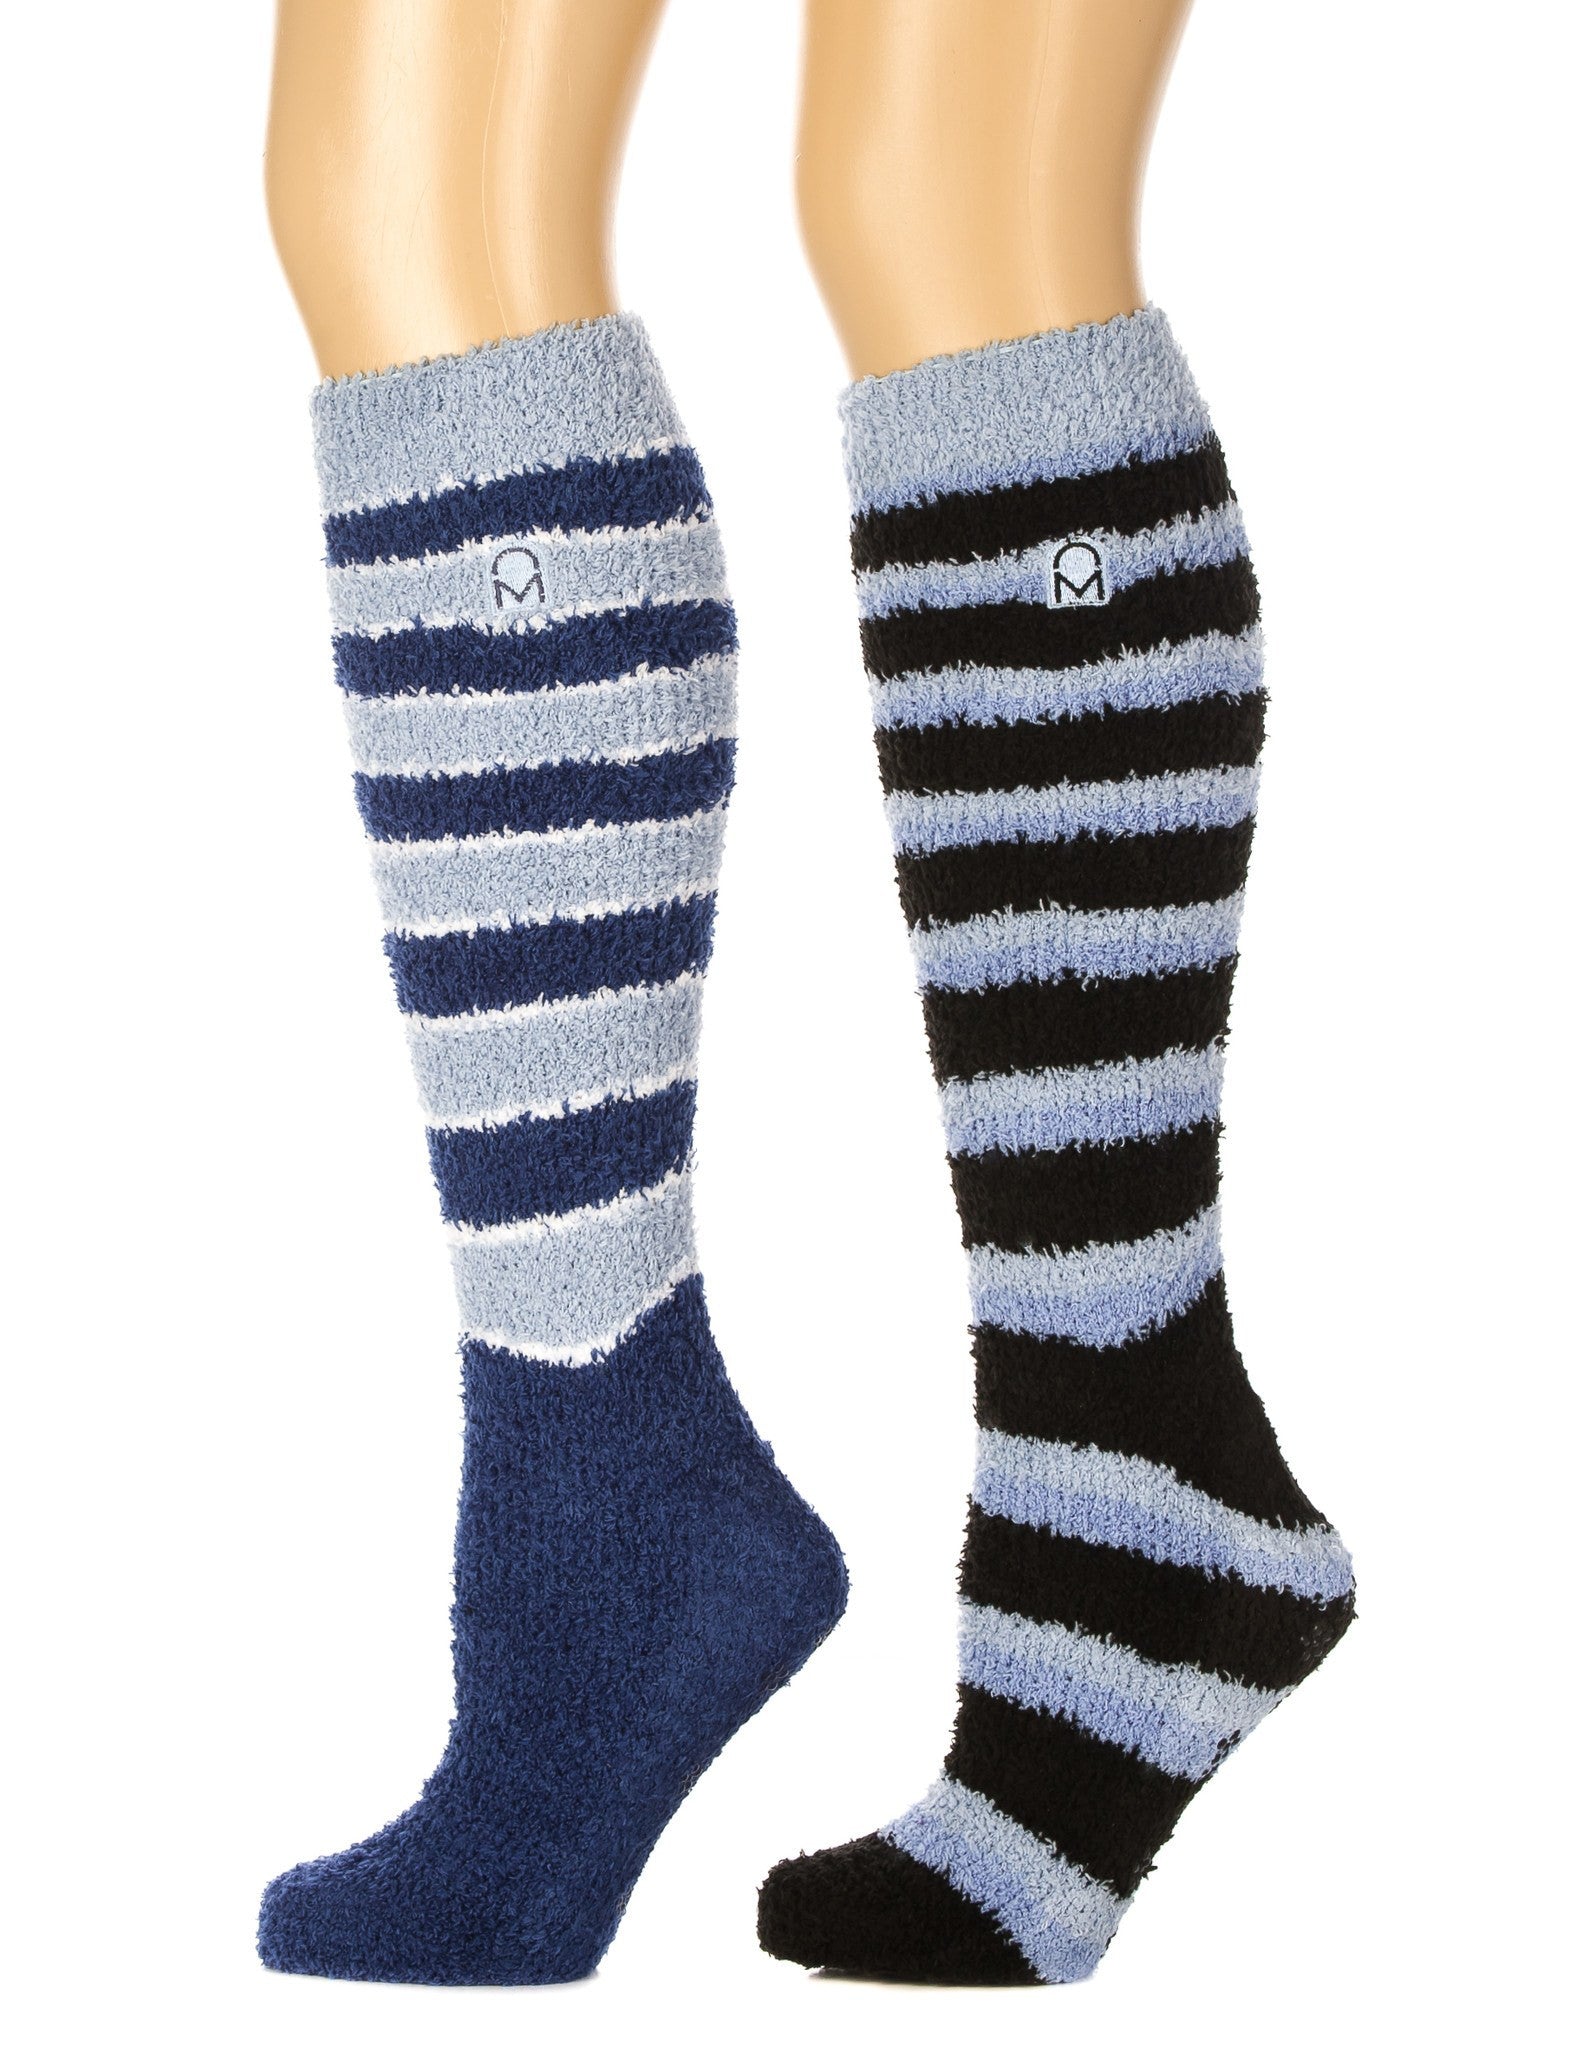 Women's (2 Pairs) Soft Anti-Skid Fuzzy Winter Knee High Socks